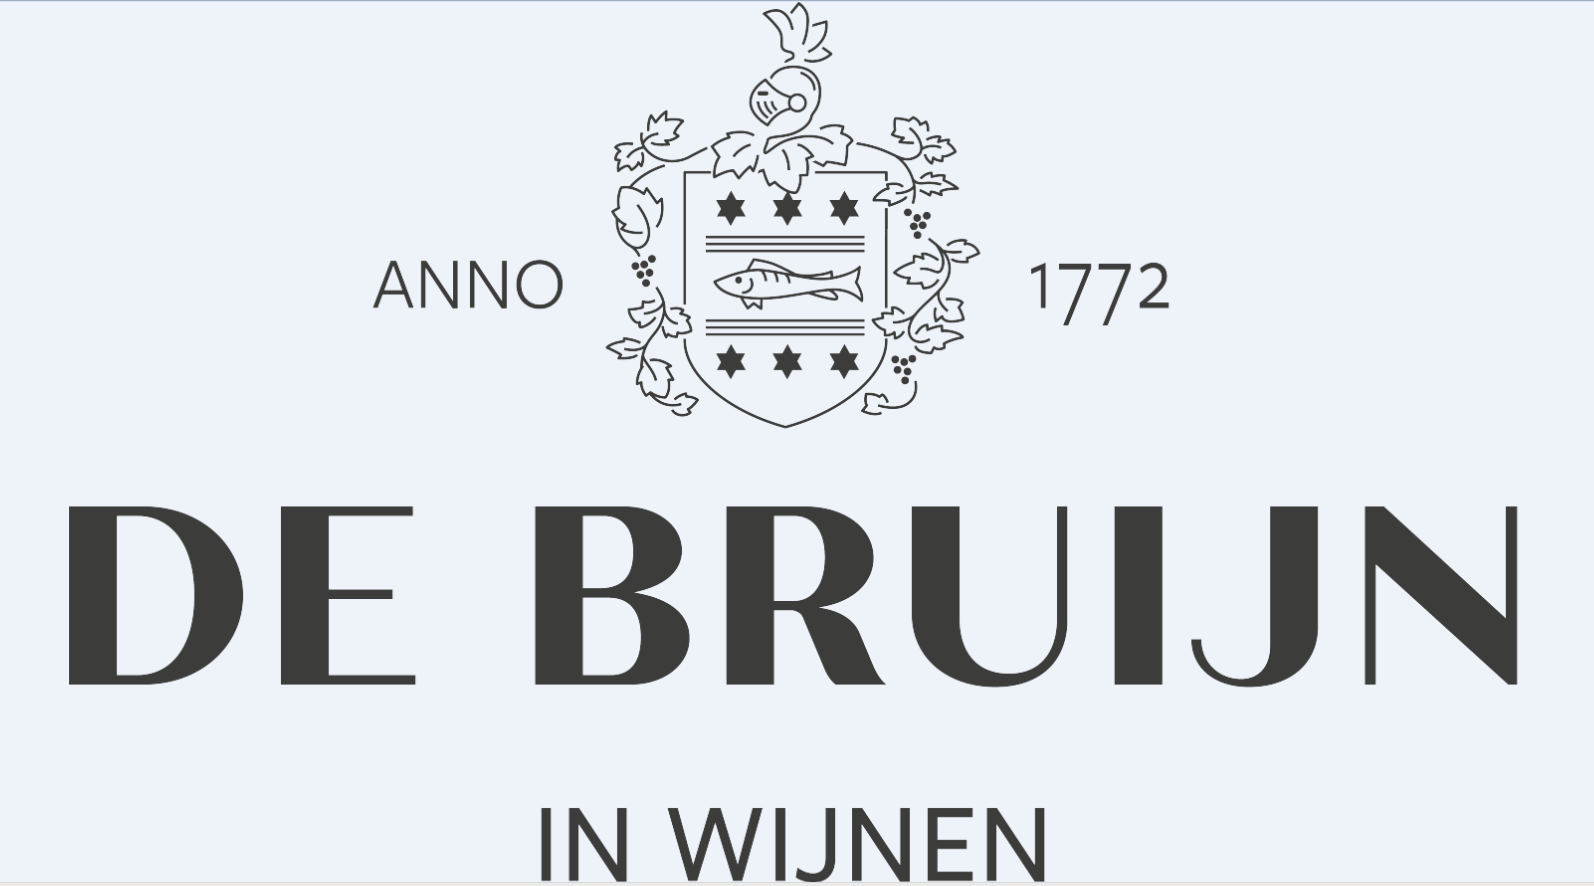 De Bruijn in Wijnen Anno 1772